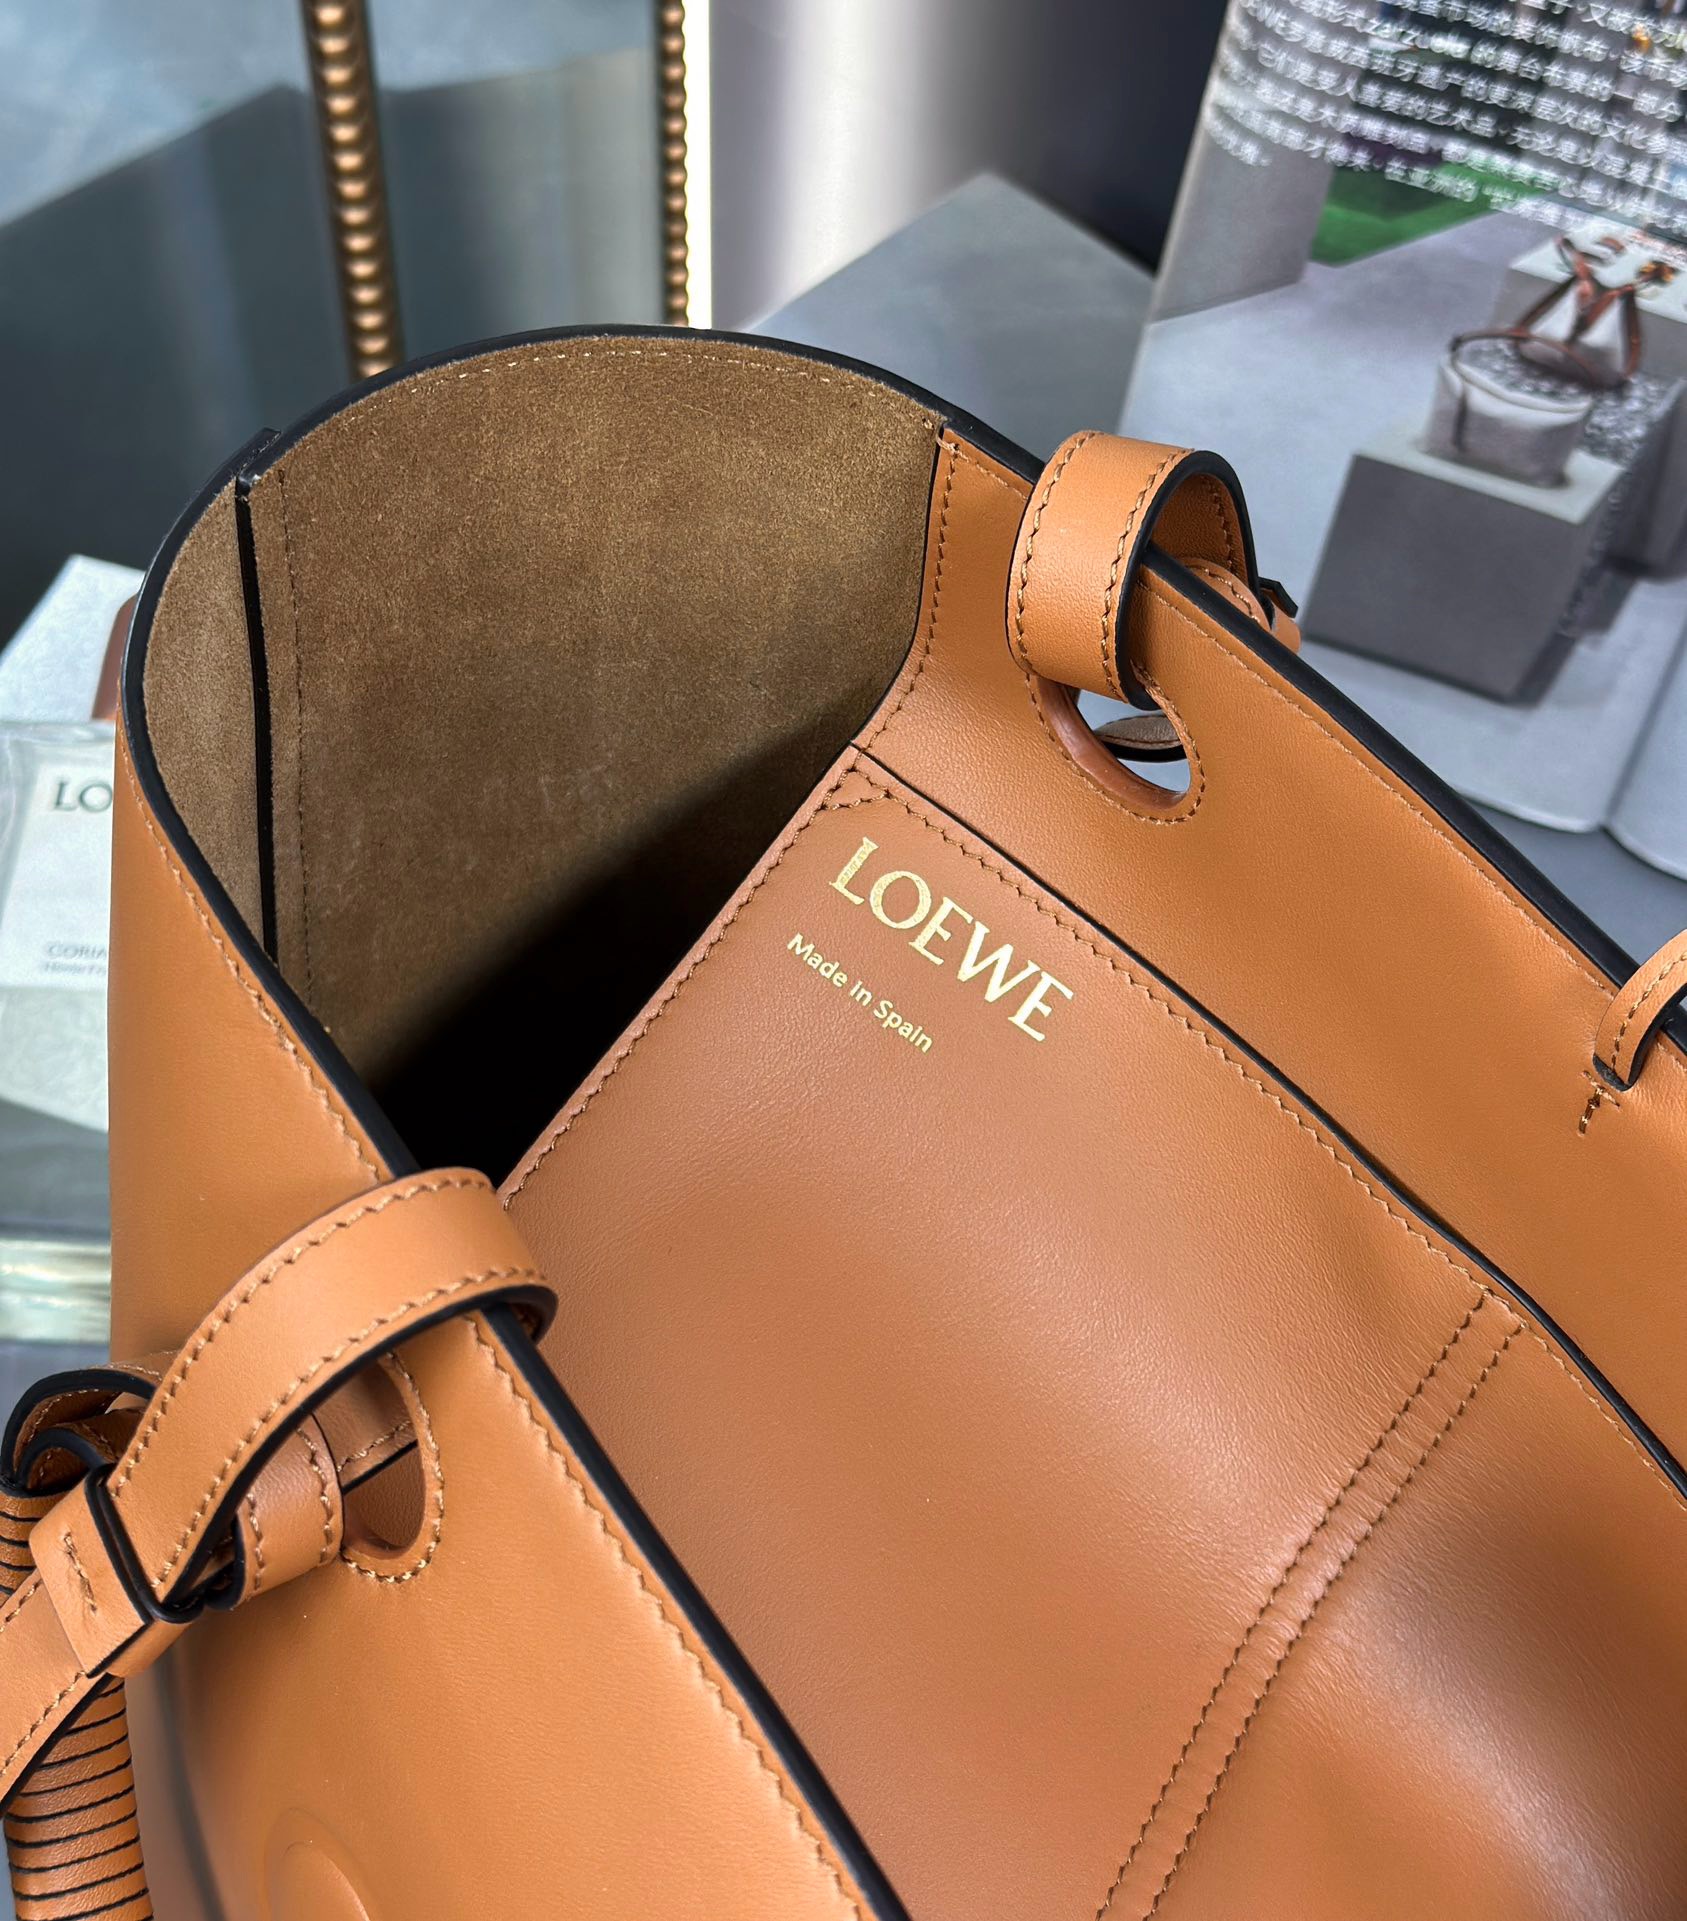 Loewe Leather tote 652388 brown